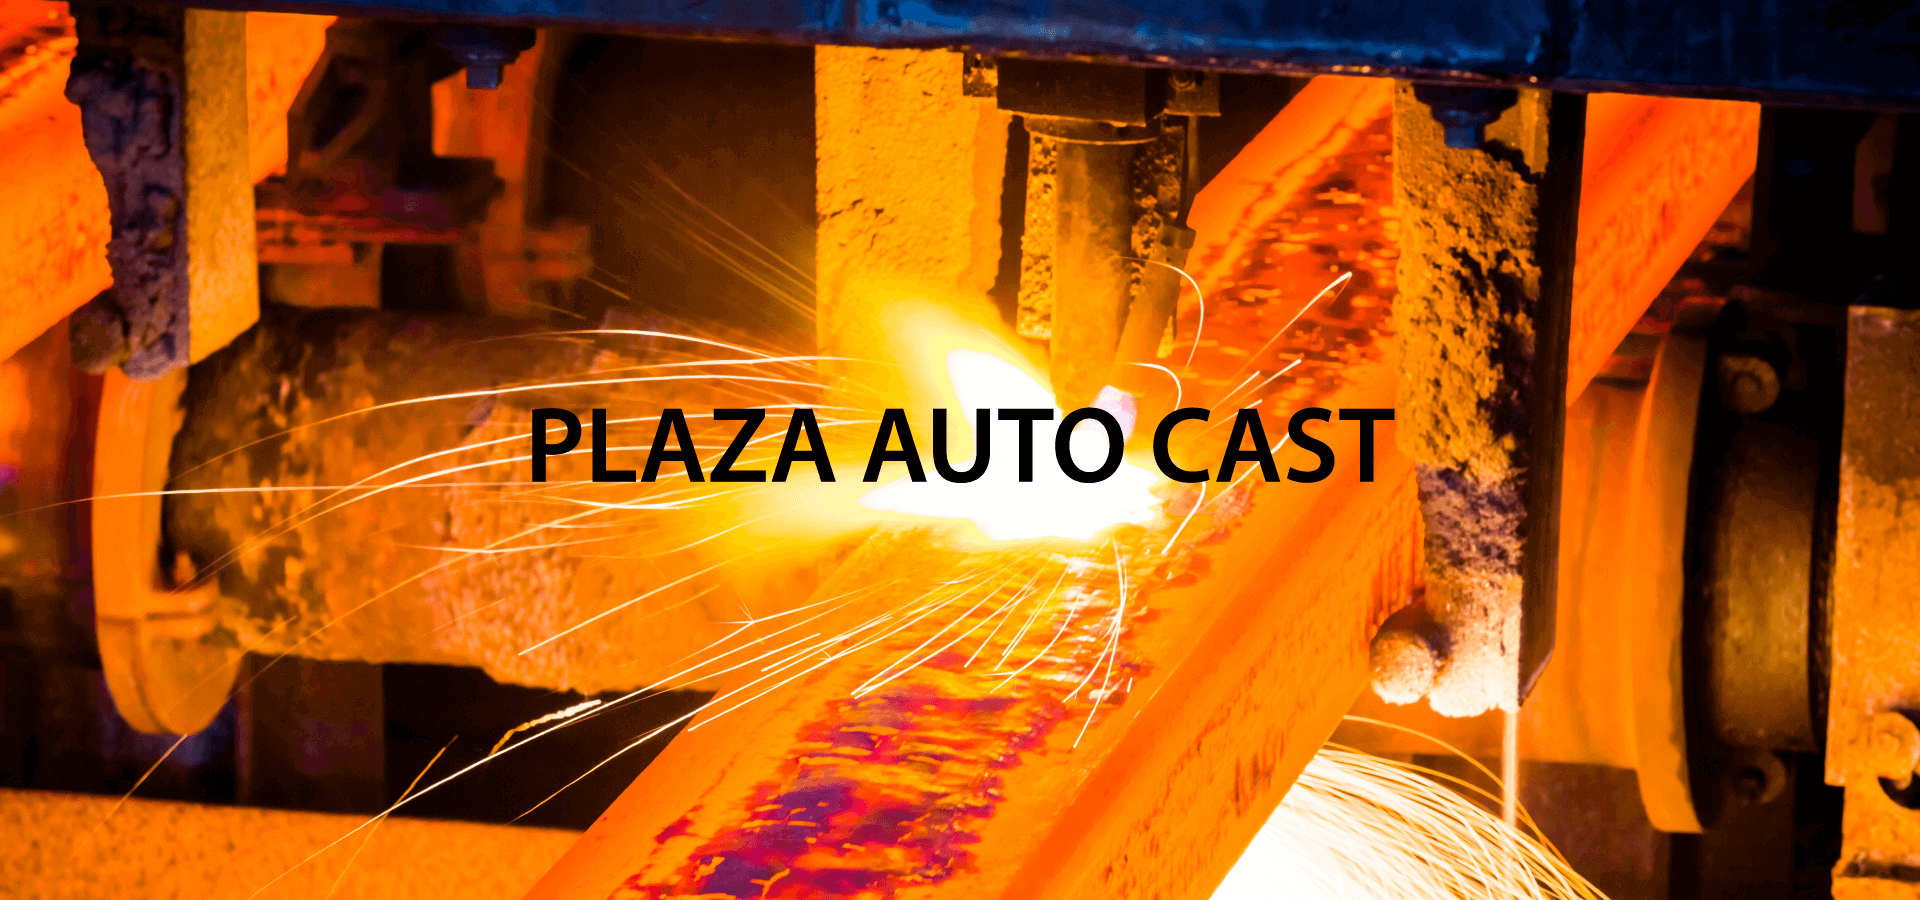 Plaza Auto Cast Pvt Ltd